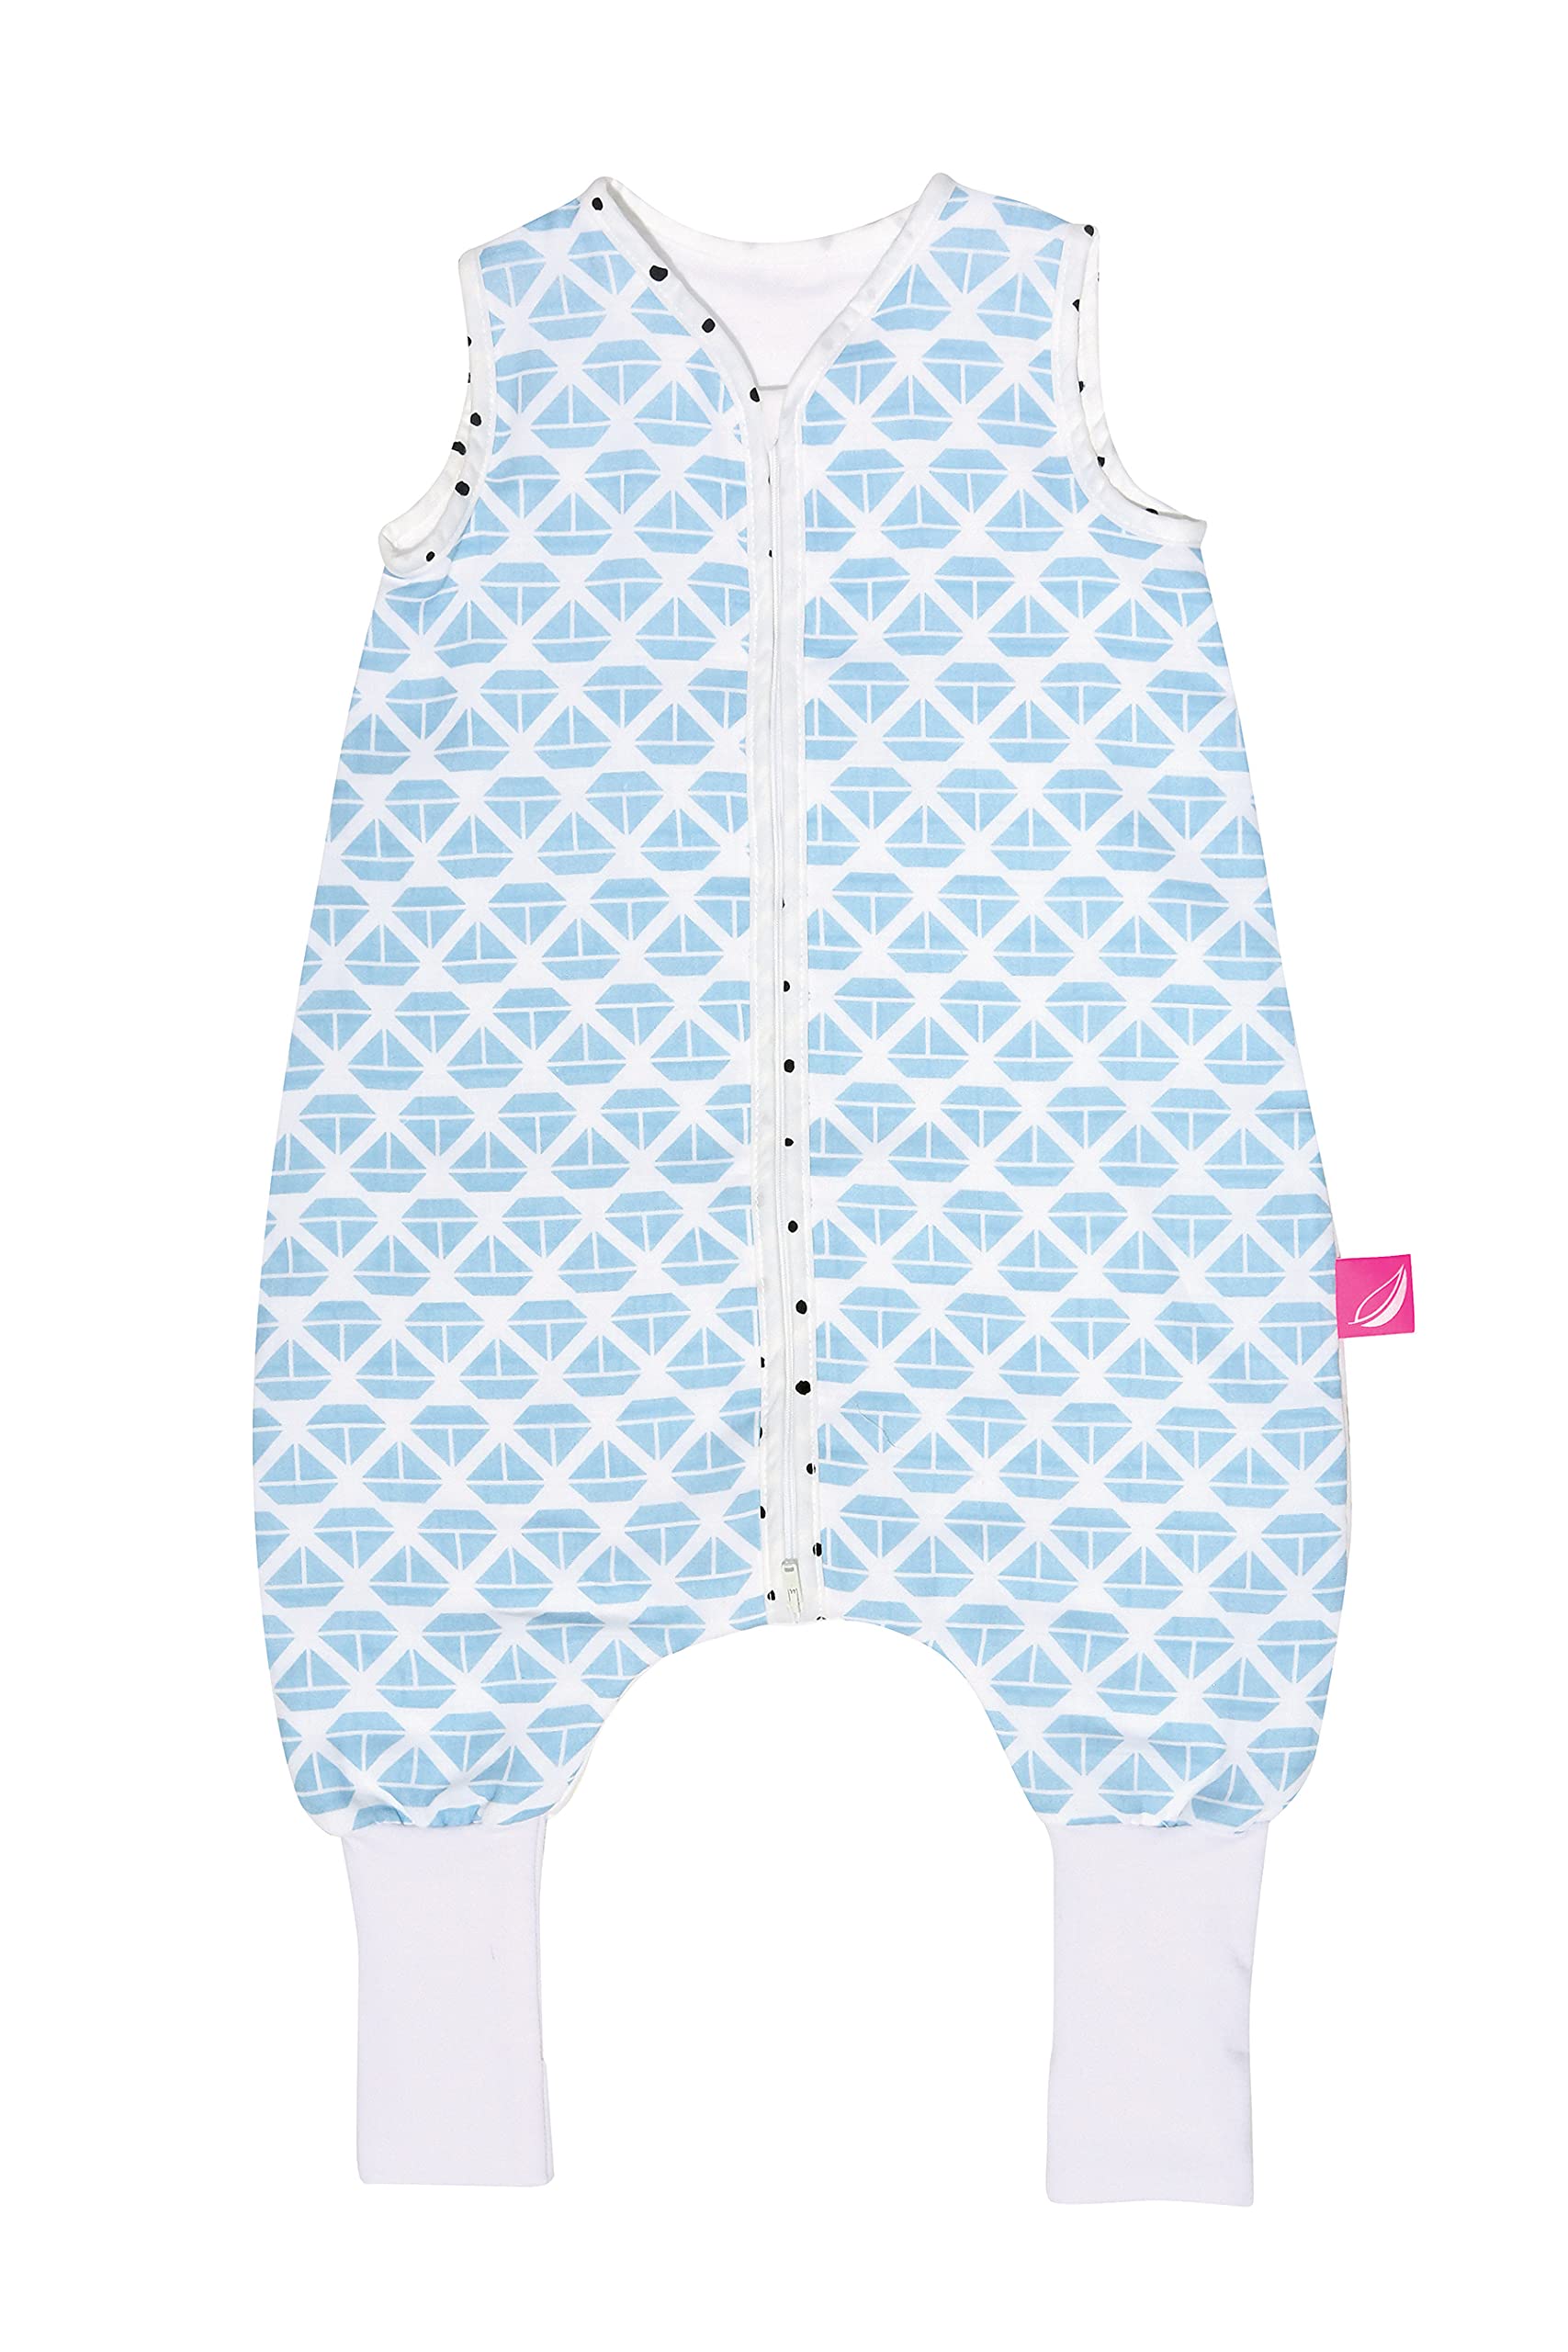 Schlafsack mit Beinen aus Baumwollmusselin von Motherhood - kuscheliger Babyschlafsack Öko Tex Standard, Klasse 1, Größe: 1-1,5 Jahre, Schiffe blau